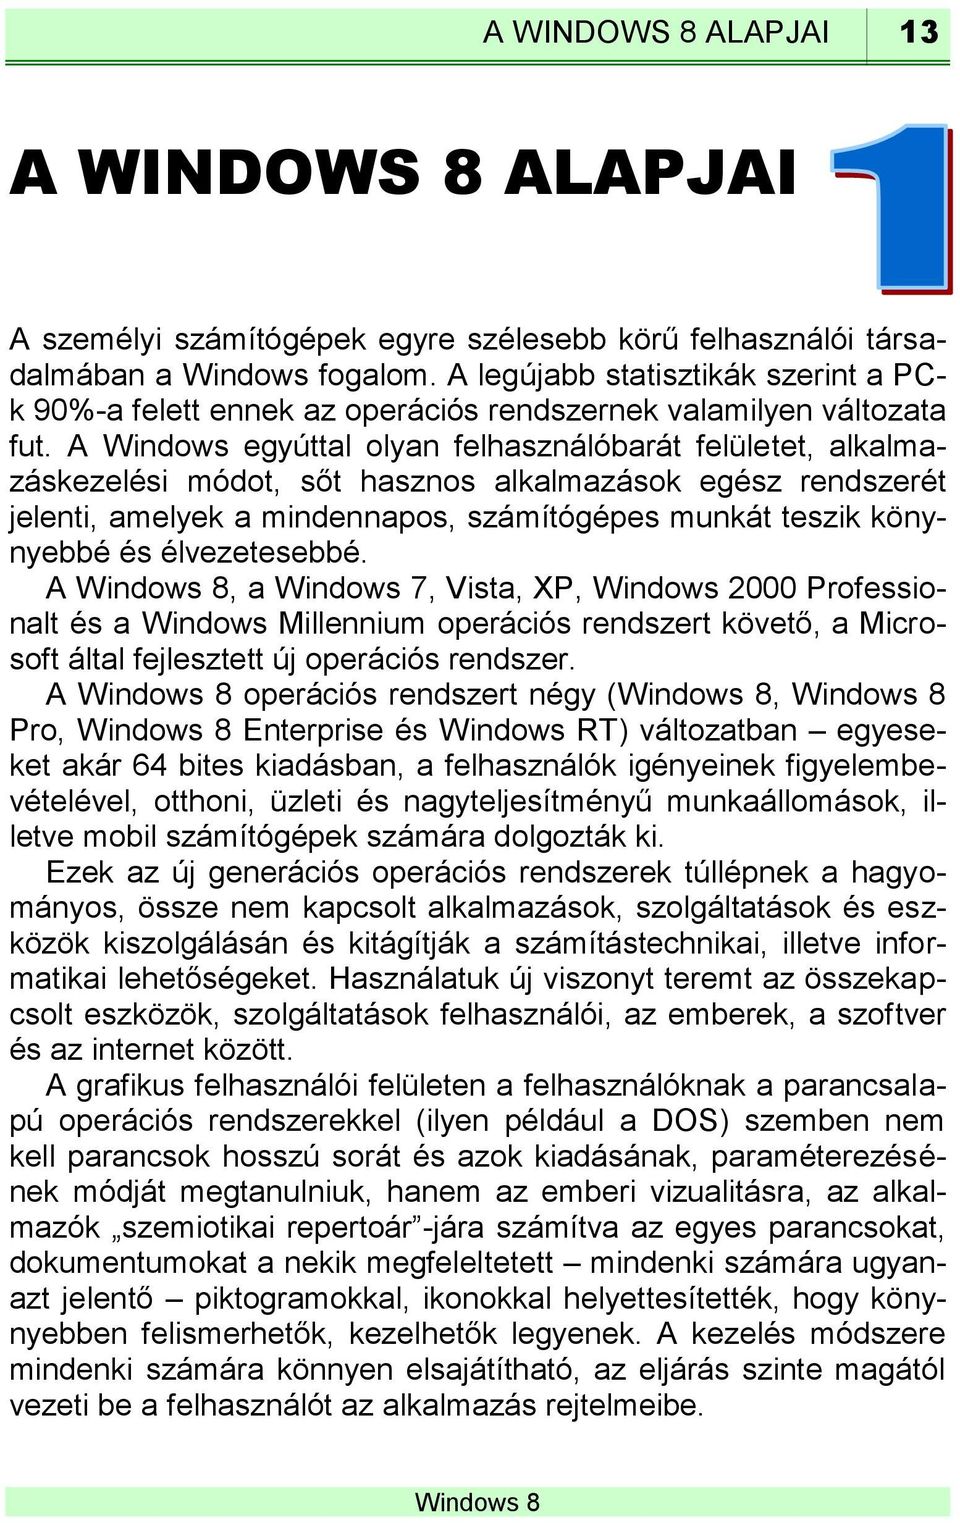 A Windows egyúttal olyan felhasználóbarát felületet, alkalmazáskezelési módot, sőt hasznos alkalmazások egész rendszerét jelenti, amelyek a mindennapos, számítógépes munkát teszik könynyebbé és